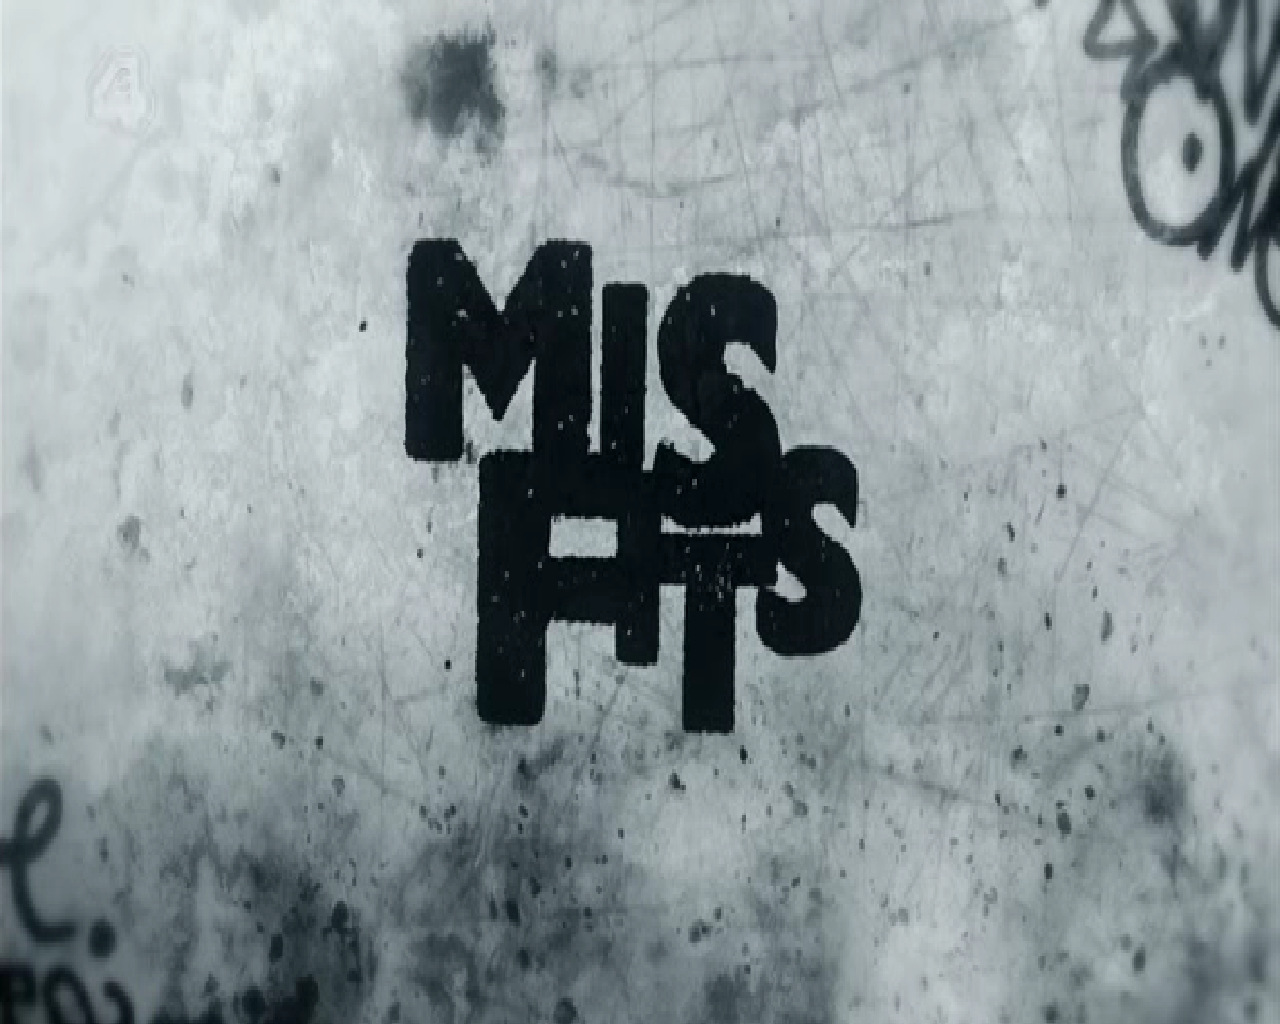 Misfits Wallpaper